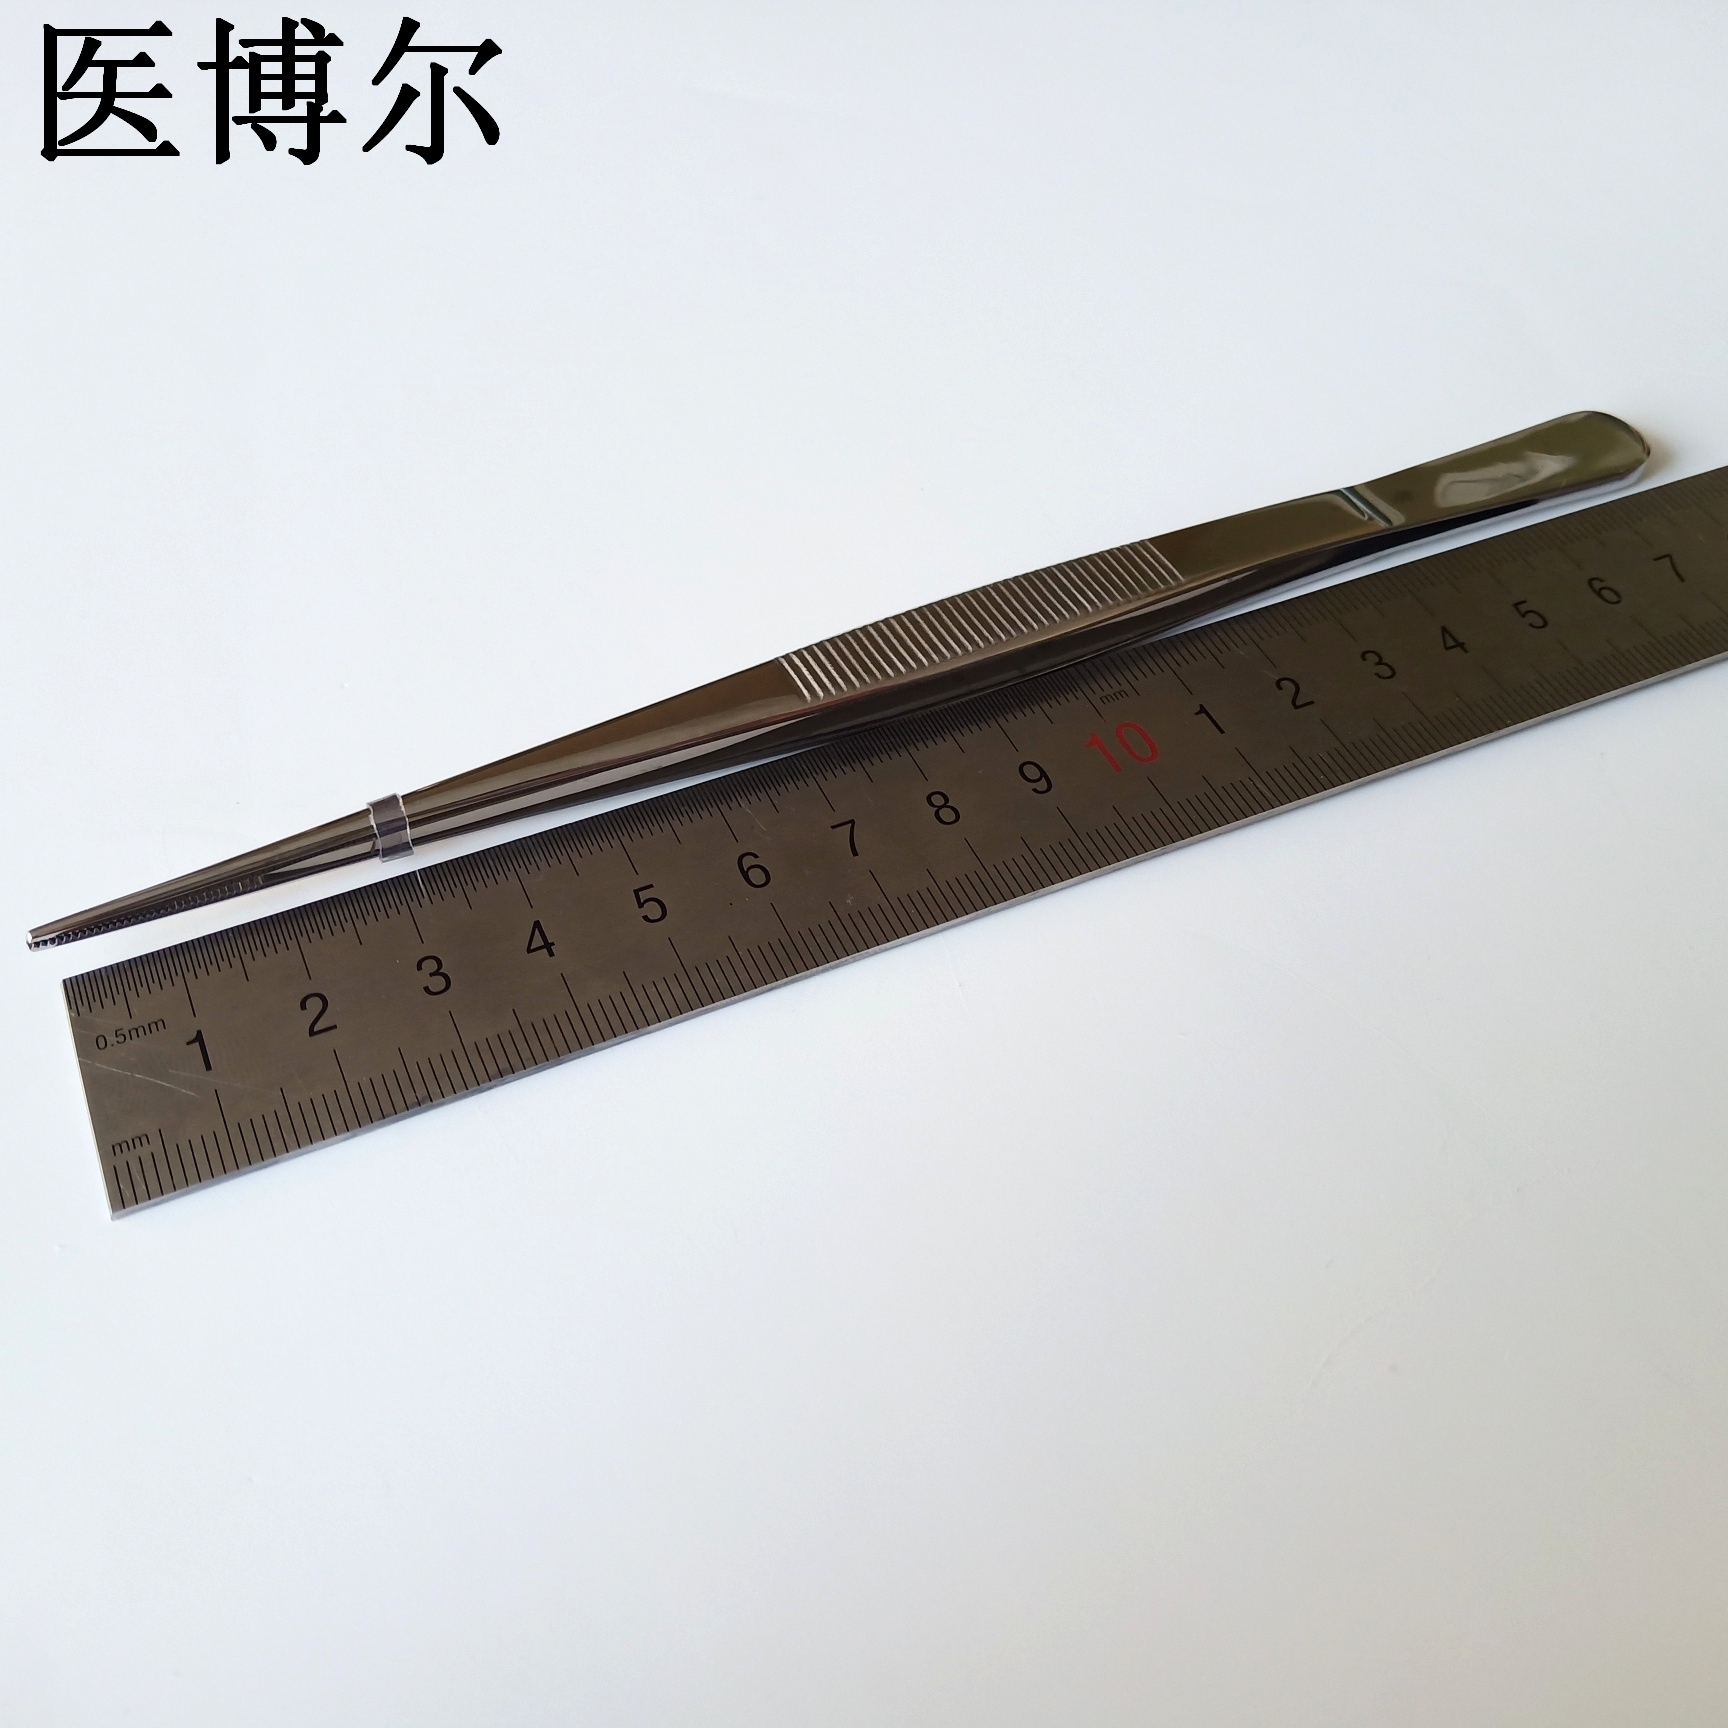 直尖镊子 18cm (1)_看图王.jpg